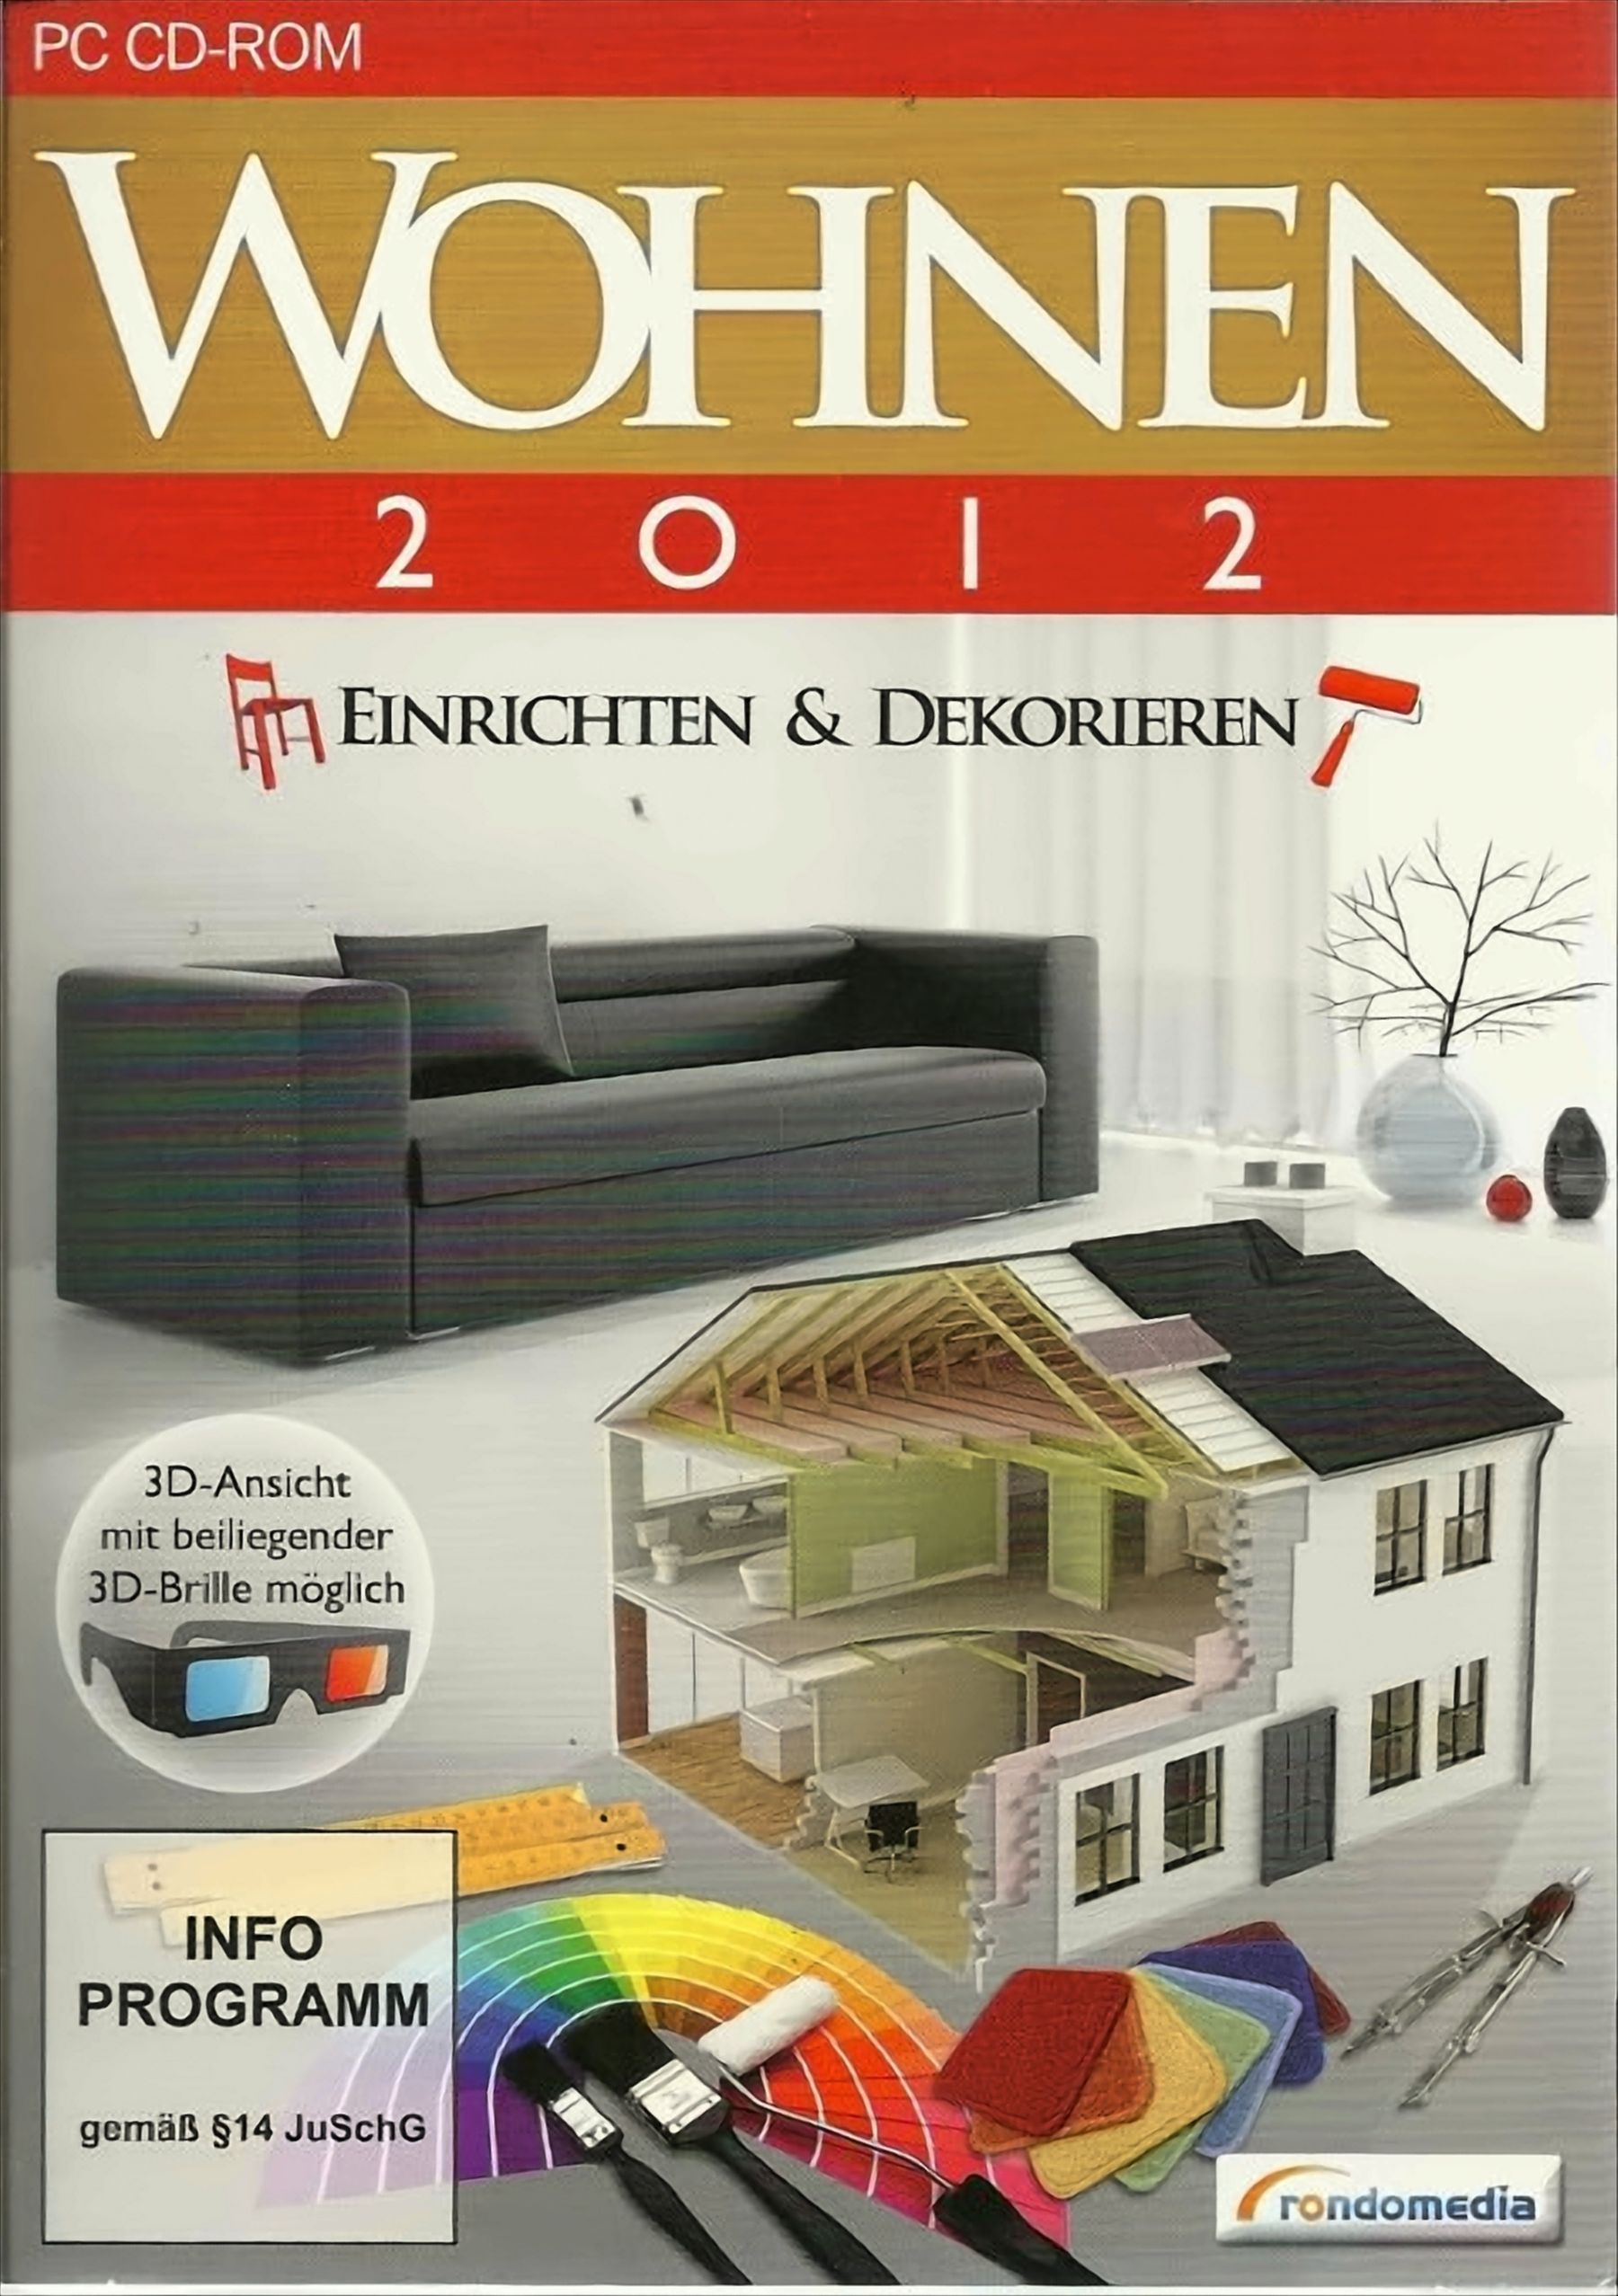 Wohnen 2012 - Einrichten & - Dekorieren [PC